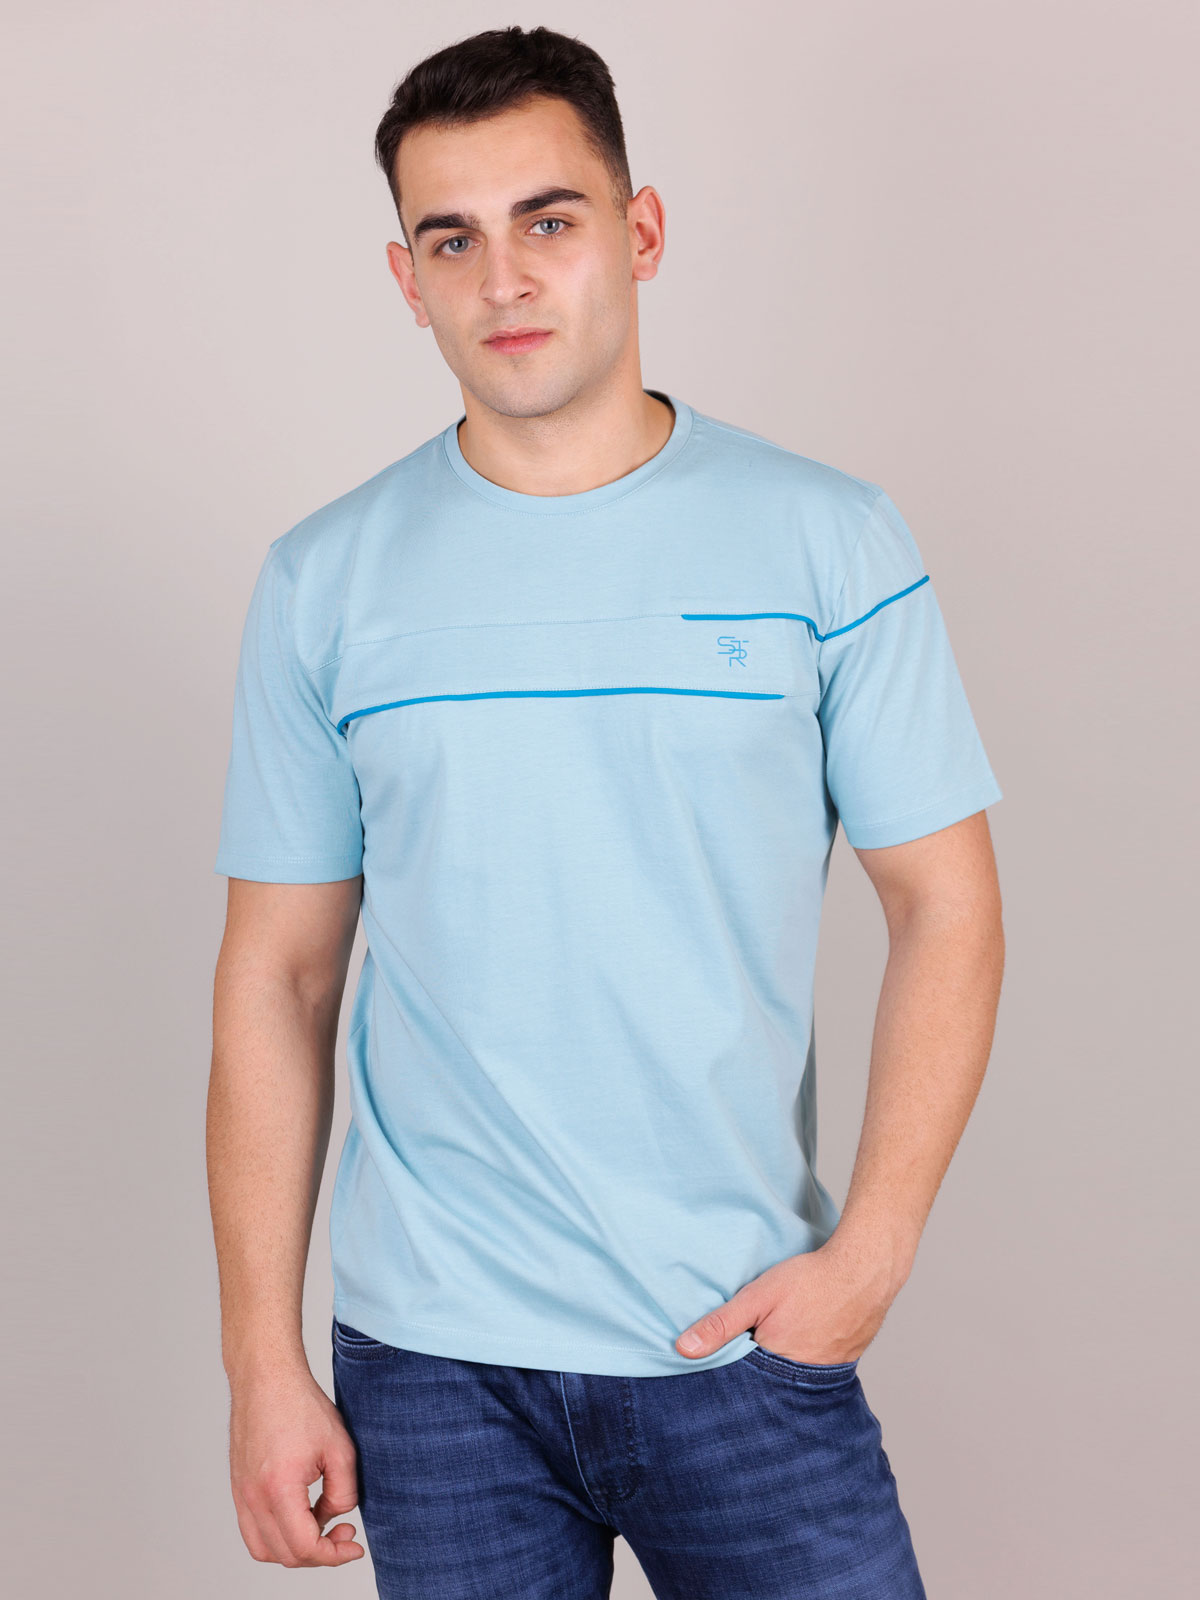 Μπλουζάκι σε γαλάζιο χρώμα με λογότυπο - 96454 € 21.93 img4